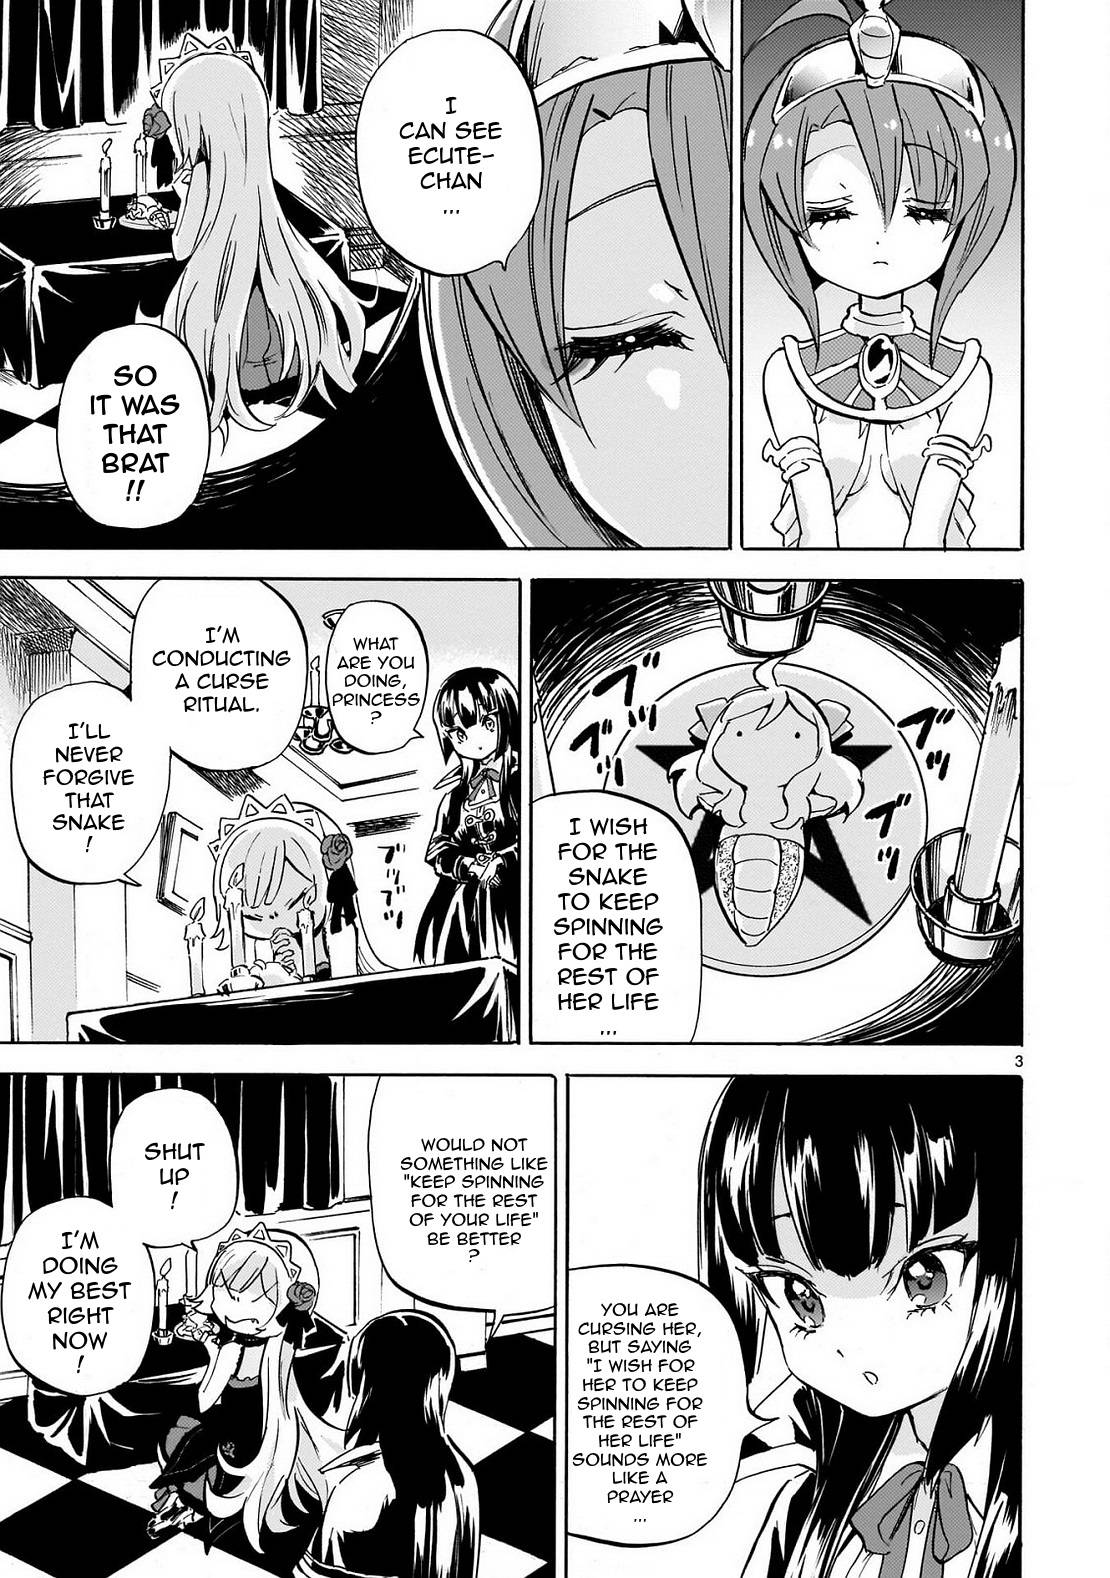 Jashin-chan Dropkick chapter 231 page 3